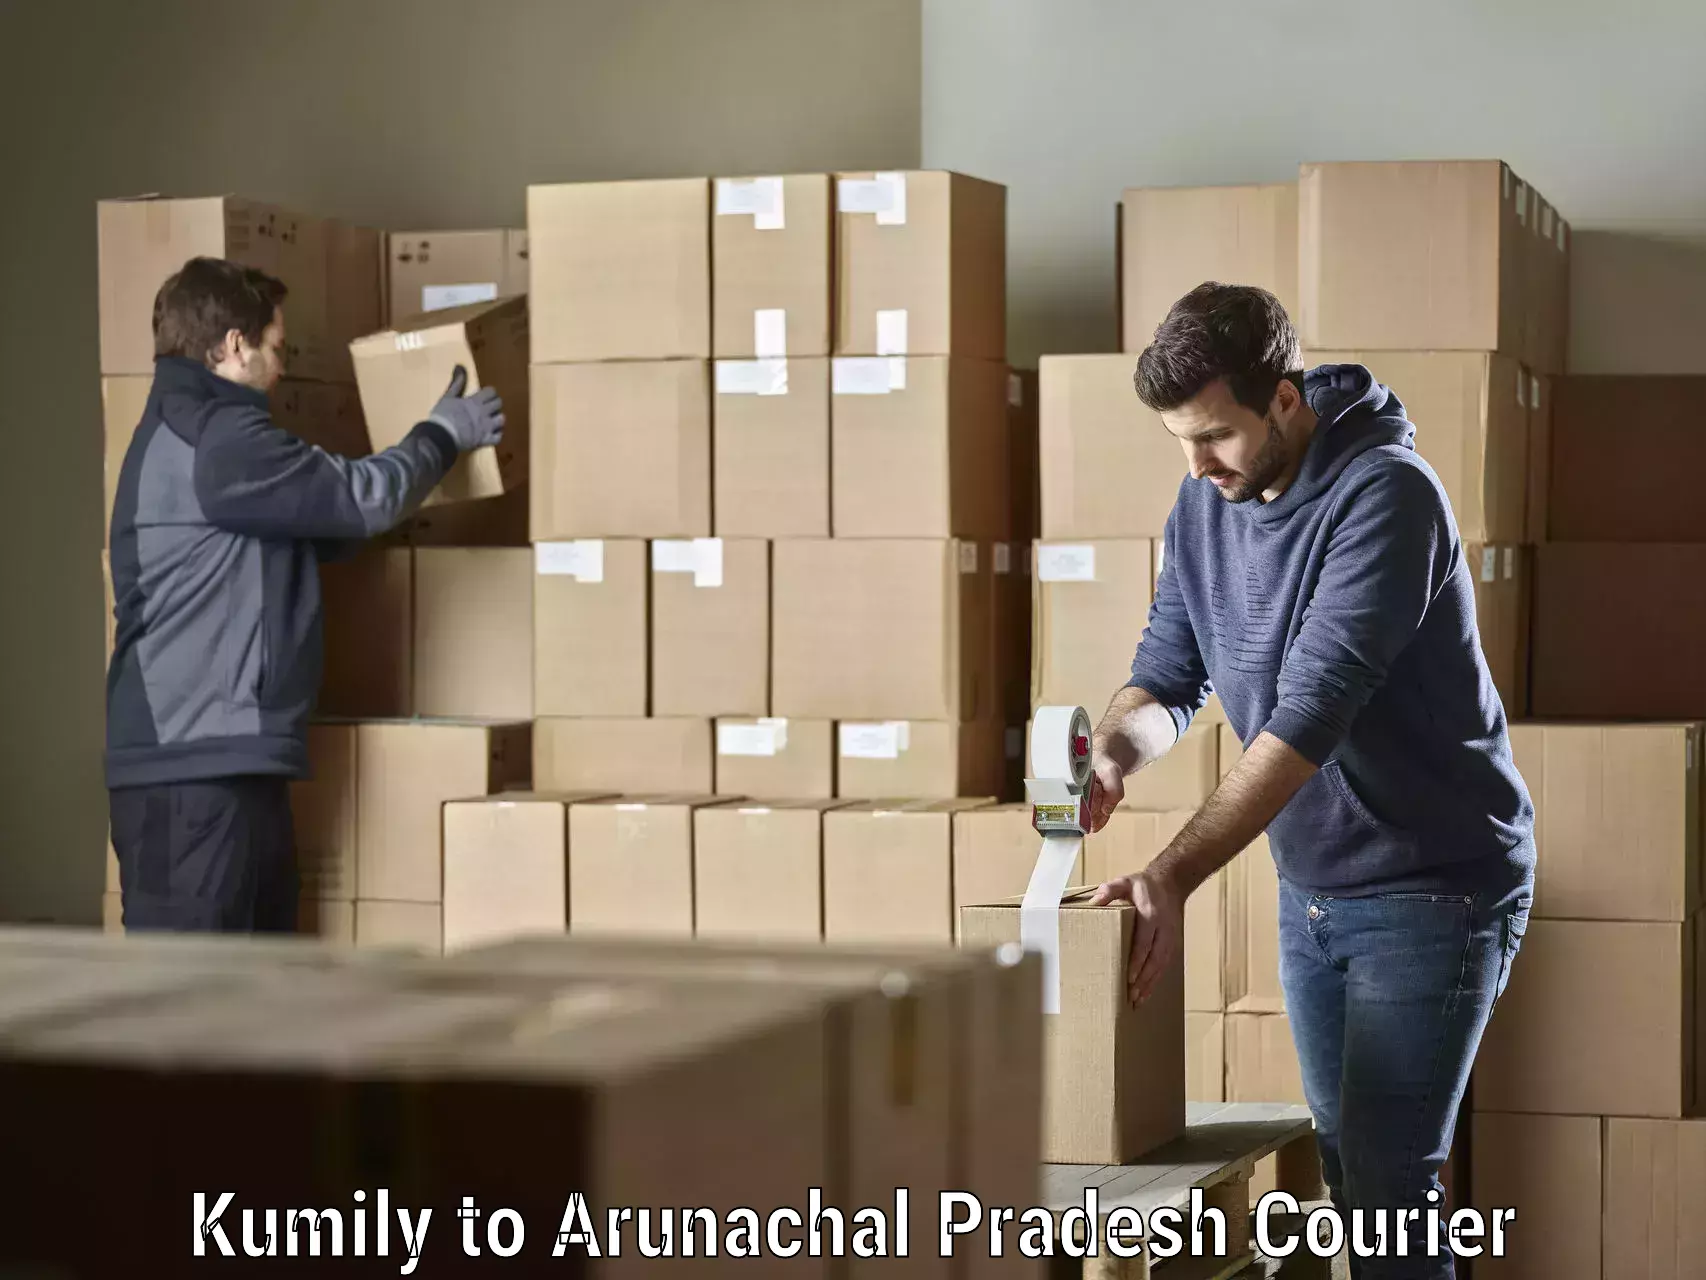 Professional courier handling Kumily to Arunachal Pradesh